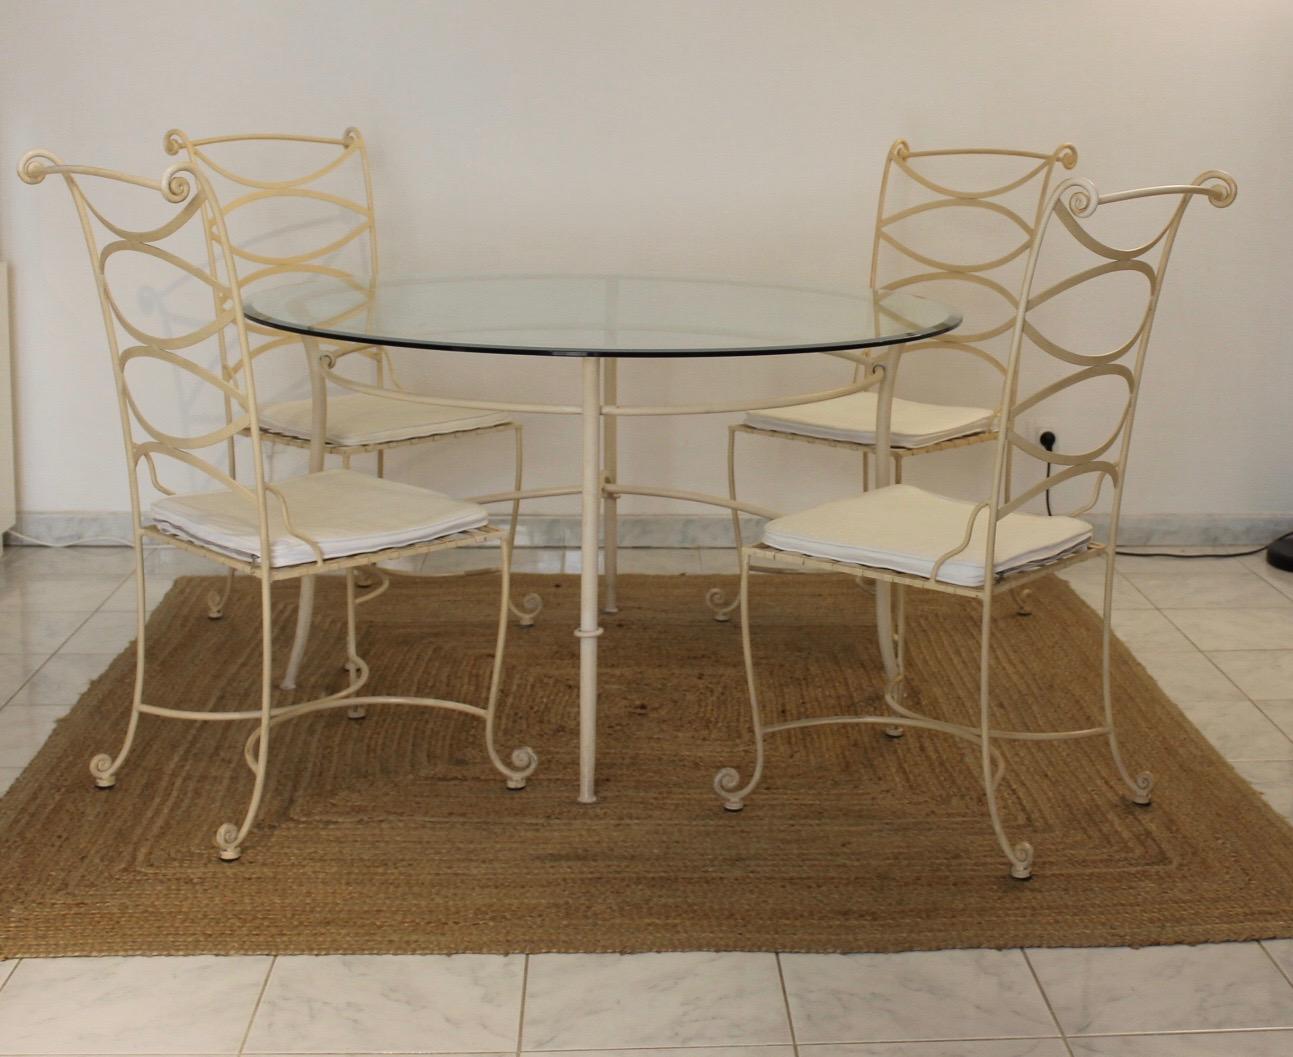 Esstisch mit 4 passenden schmiedeeisernen Stühlen.
Farbe Elfenbein. Kann für das Innere eines Raumes oder für den Außenbereich geeignet sein.
Französische Arbeiten aus den 80er Jahren von guter Qualität.